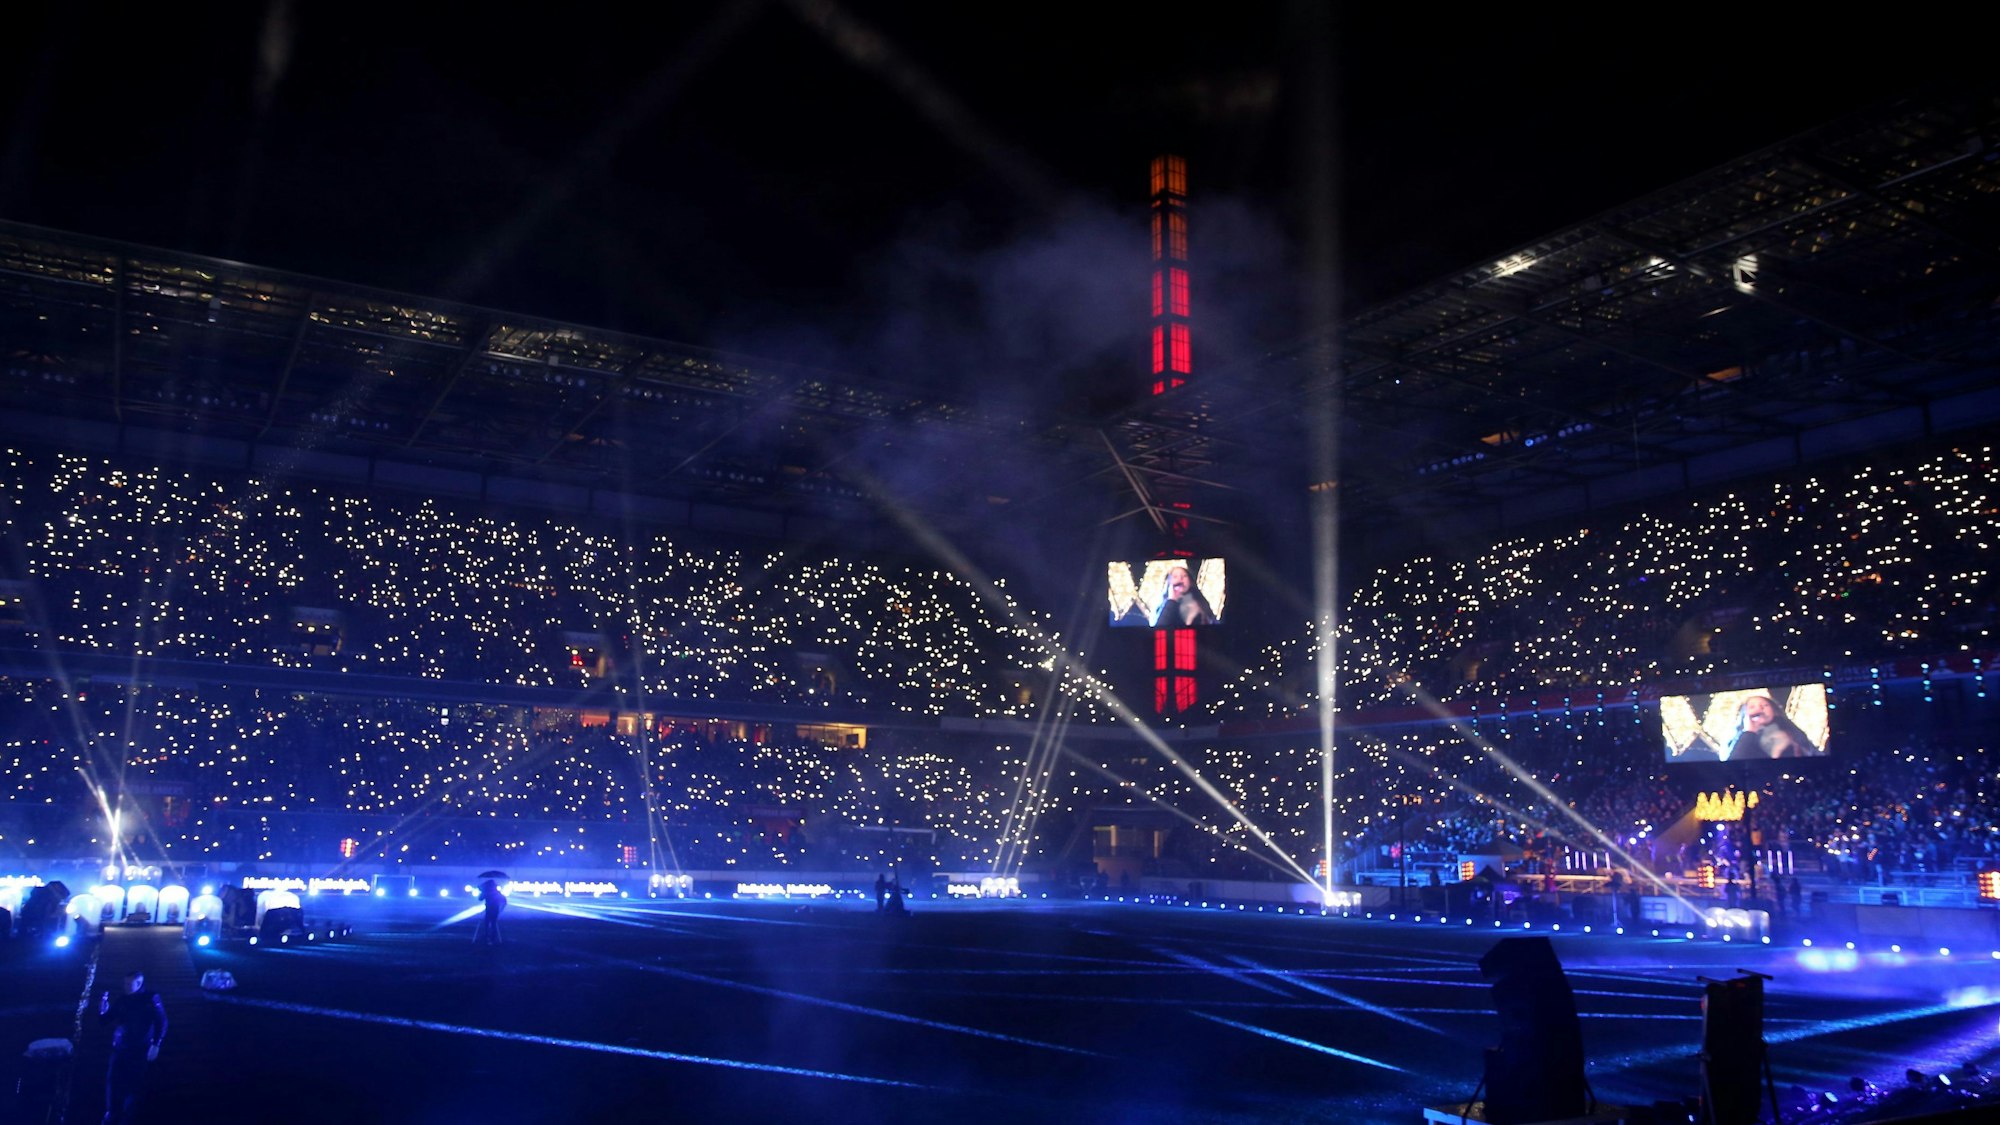 Tausende Lichter erstrahlen auf den vollen Tribünen des abgedunkelten Rheinenergie-Stadions in Köln bei der Mitsing-Veranstaltung "Loss mer Weihnachtsleeder singe" 2019.